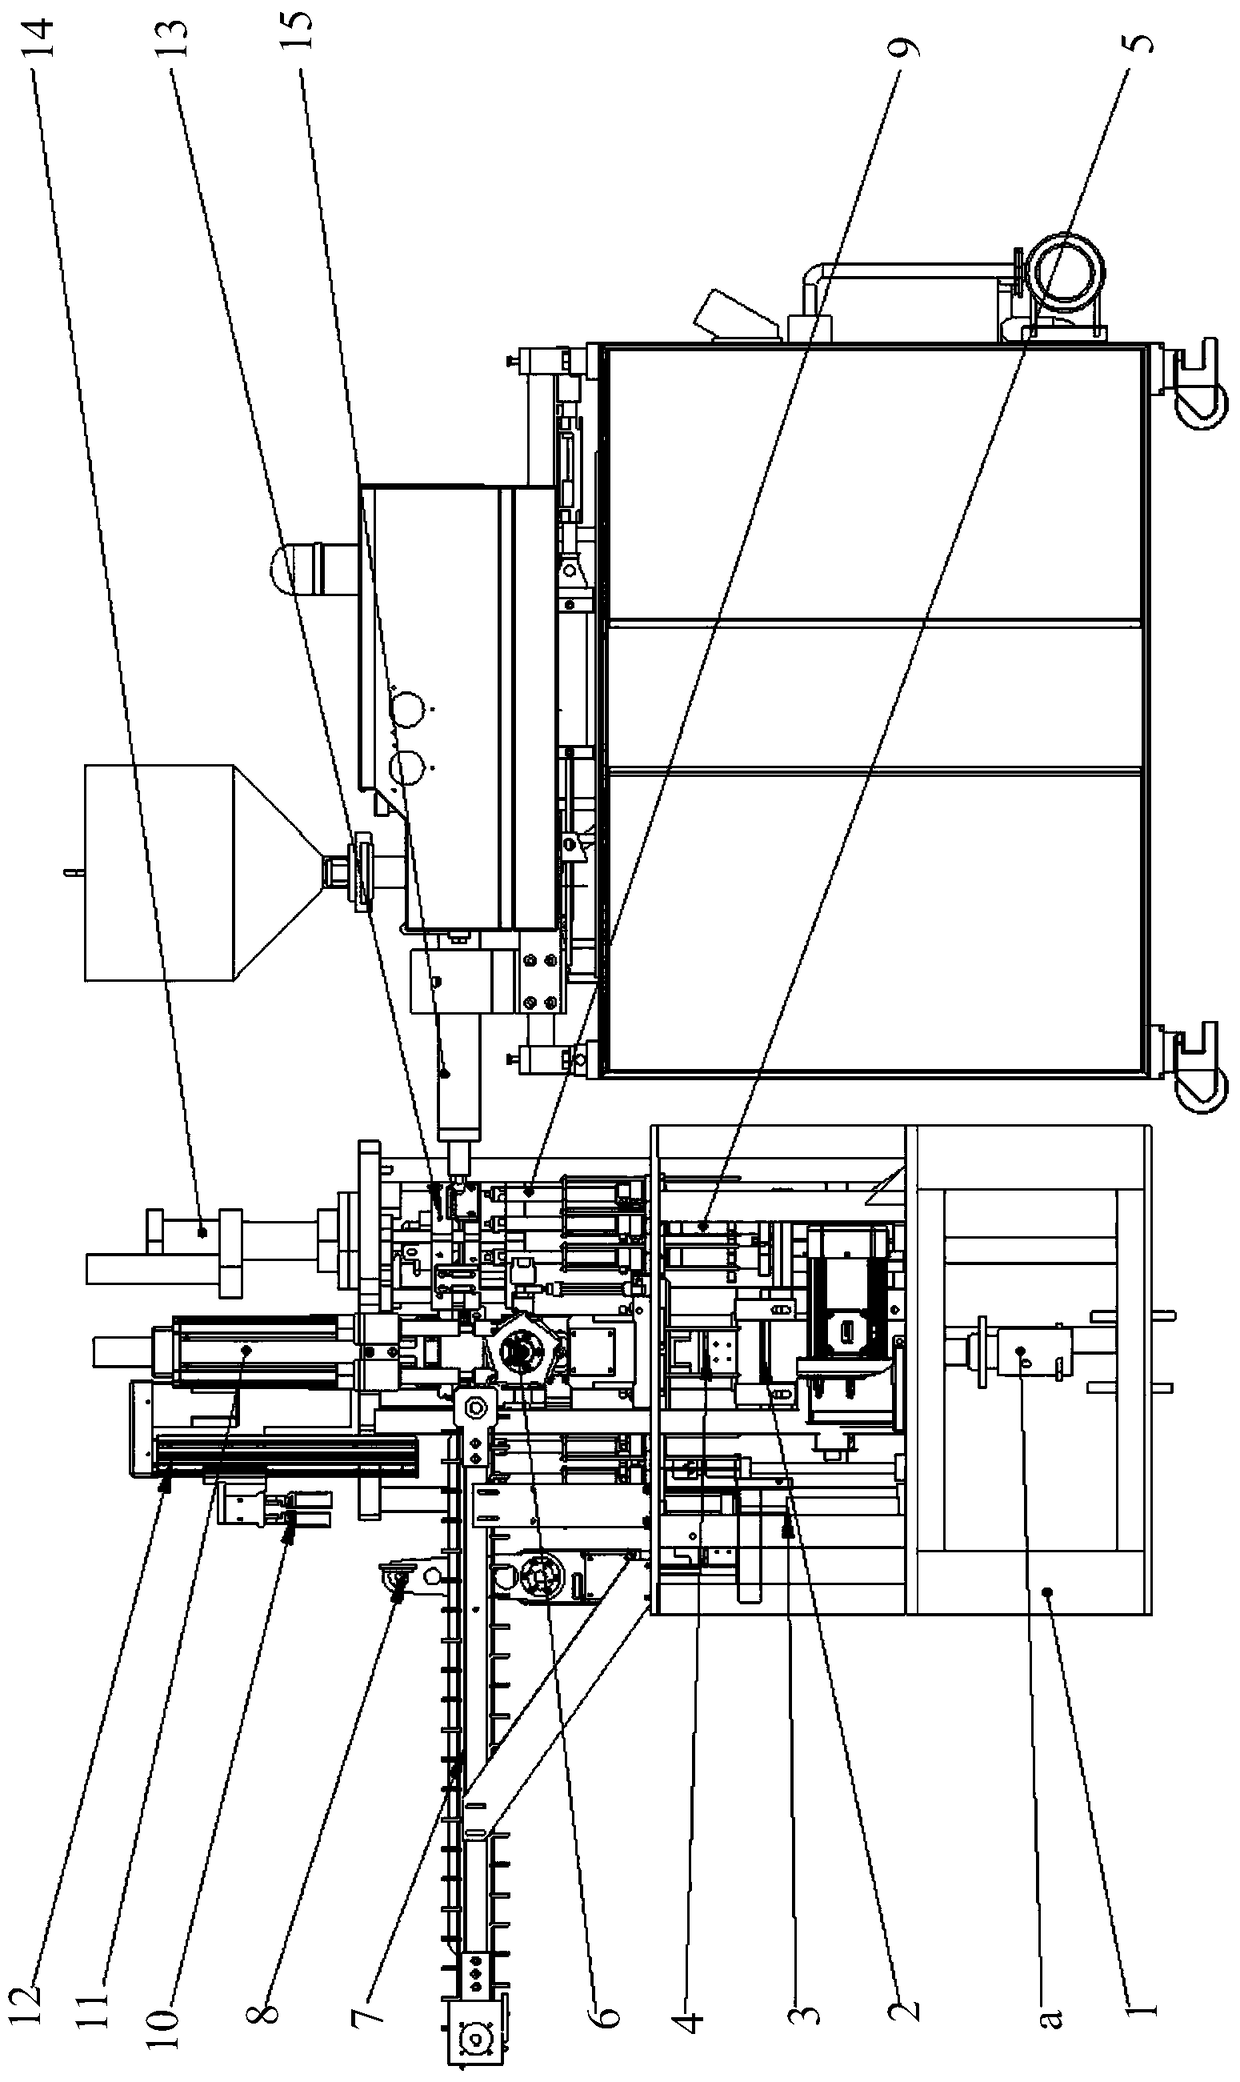 Upper Shoulder Bowl Compression Molding Type Shoulder Injection Machine